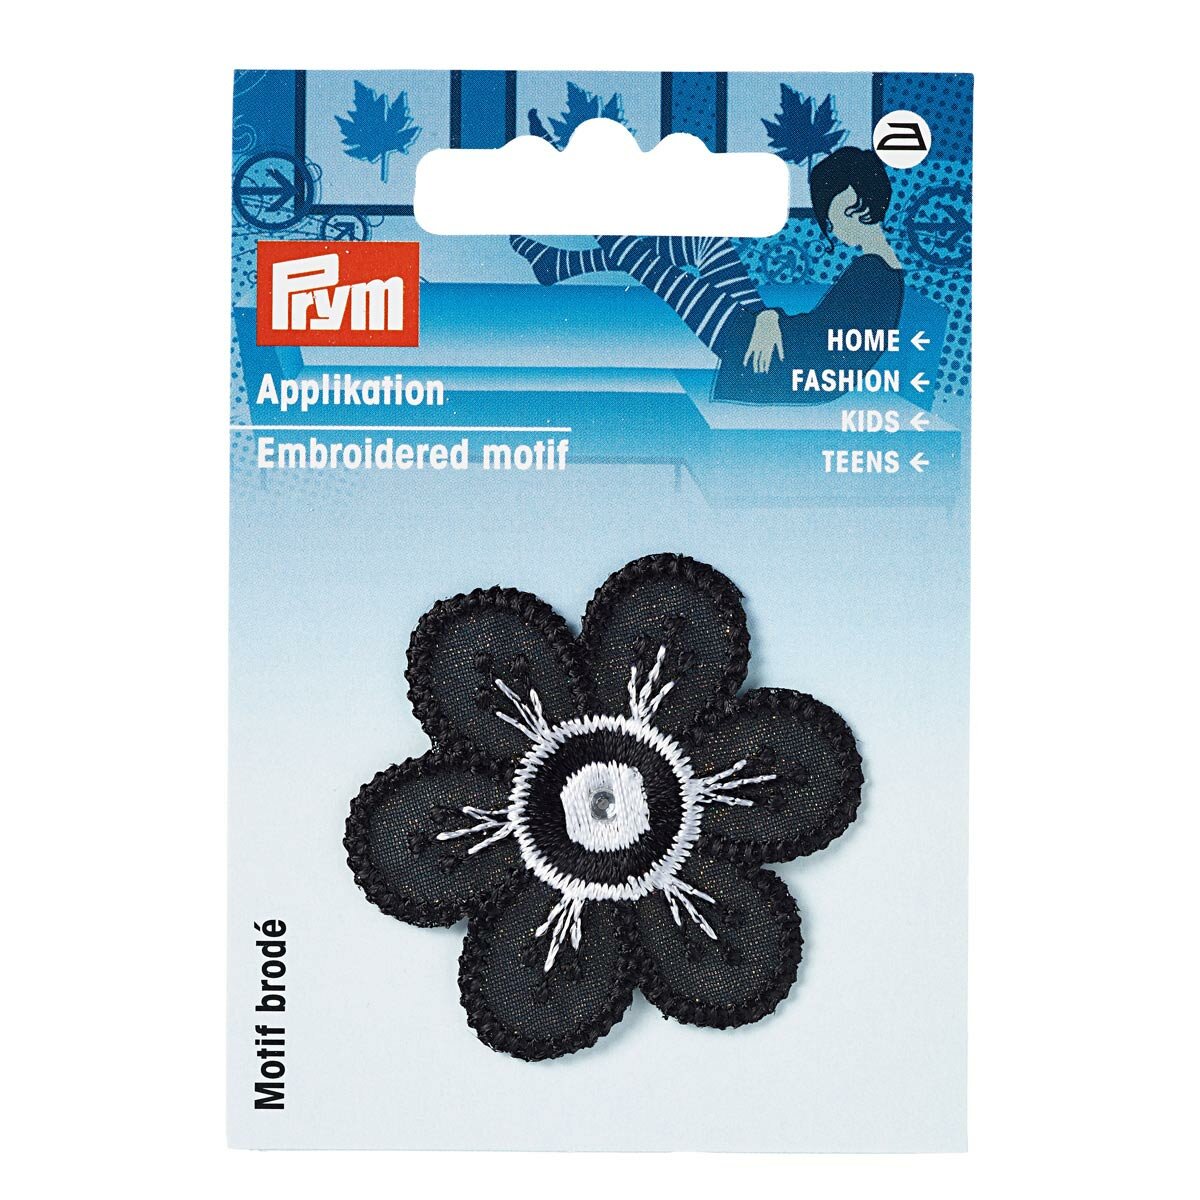 926368 Термоаппликация Цветок малая, черный/белый цвет, 4,5 см, Prym